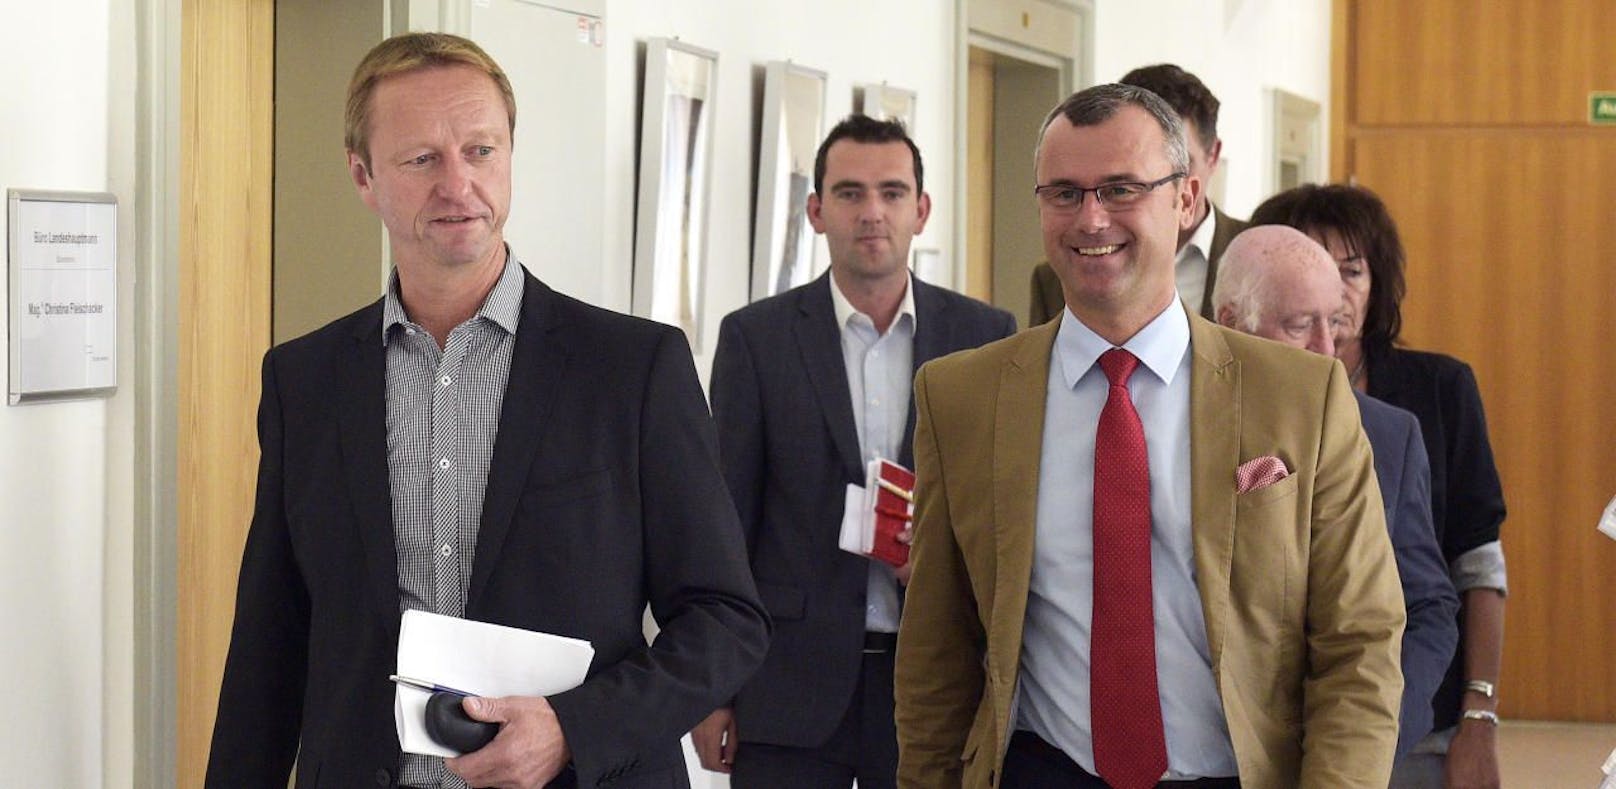 Der burgenländische FPÖ-Landesparteiobmann Johann Tschürtz (l.) und Norbert Hofer bei Sondierungsgesprächen mit der SPÖ 2015